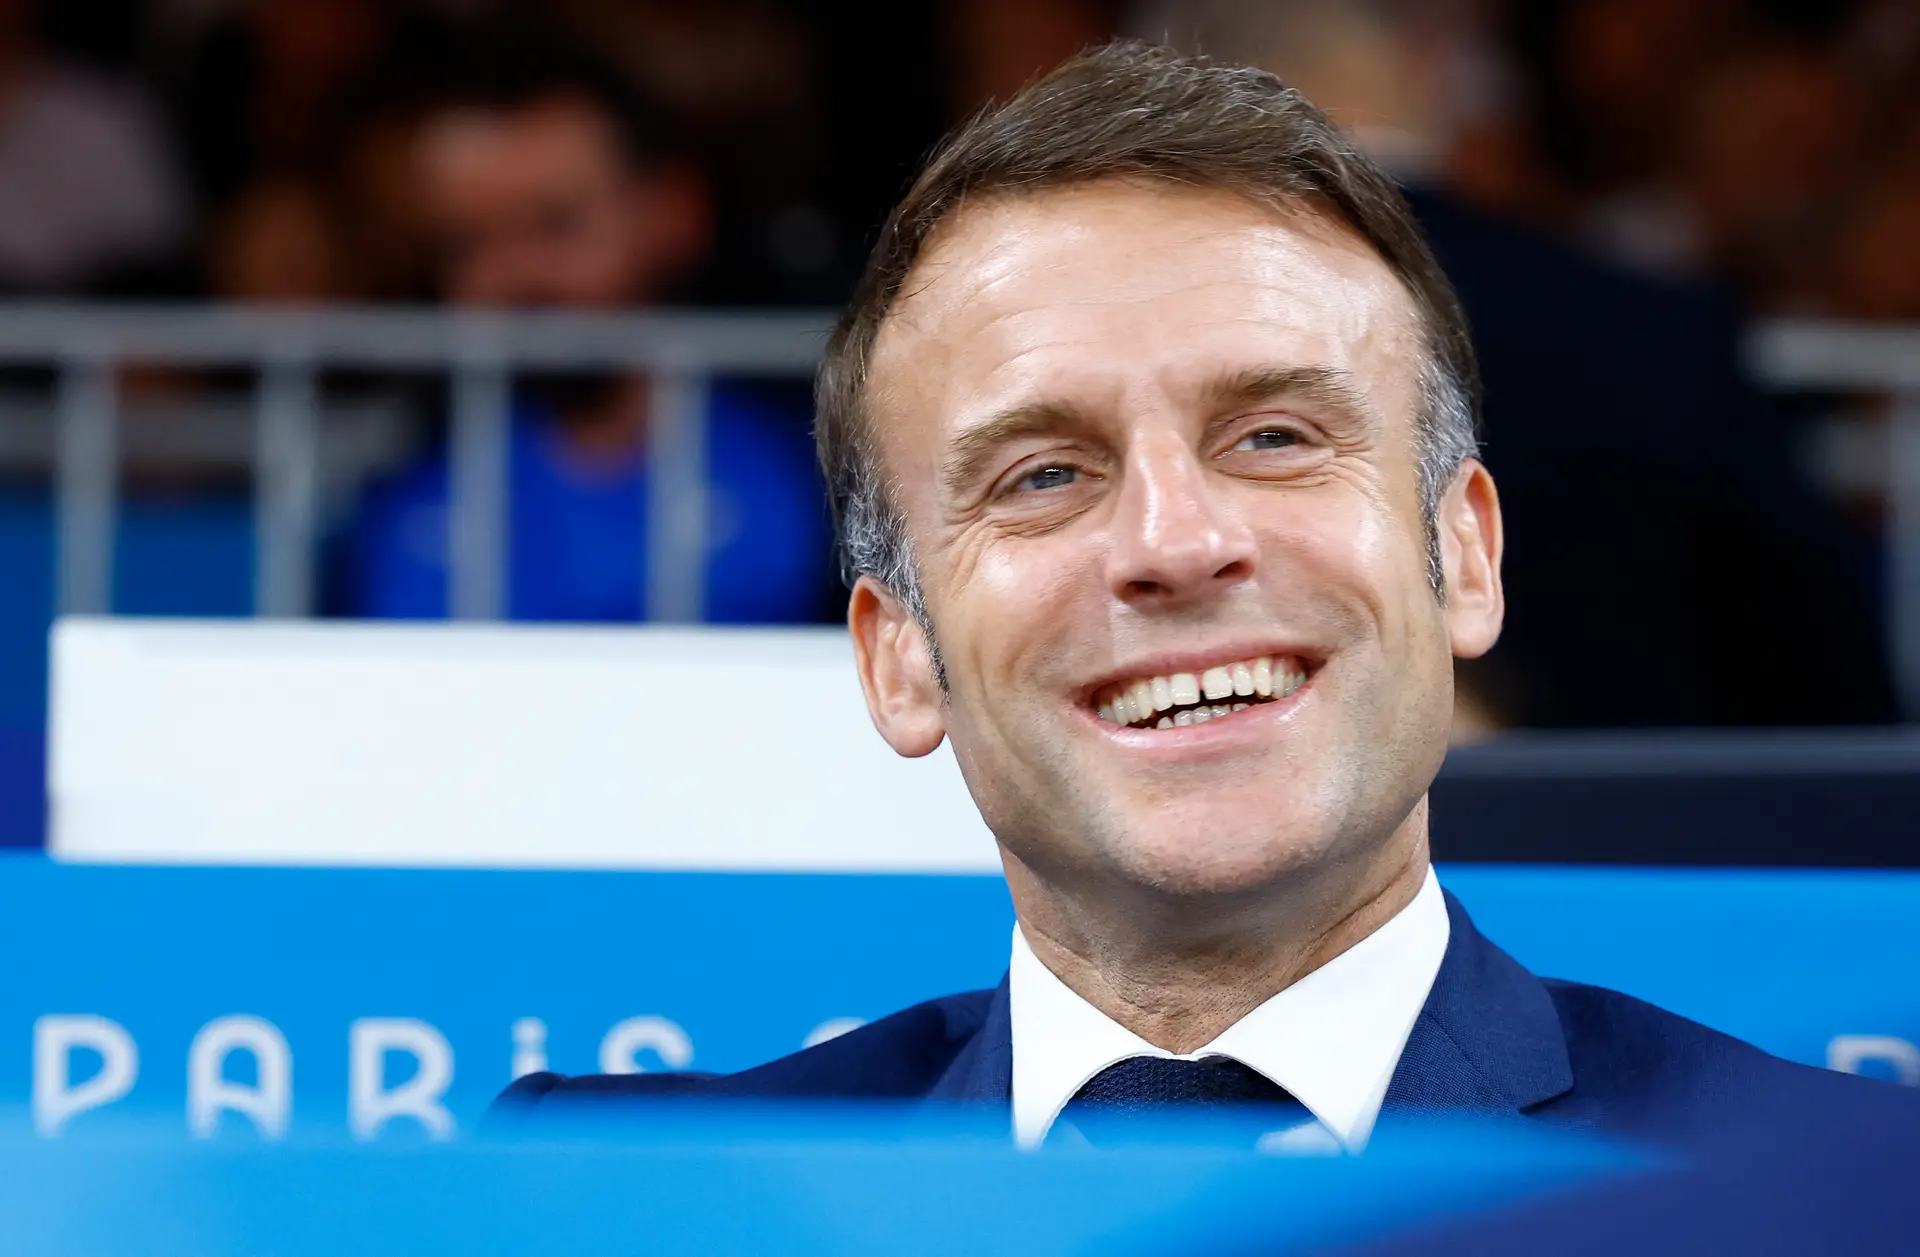 L’image qui fait parler : le baiser entre Macron et le ministre français des Sports